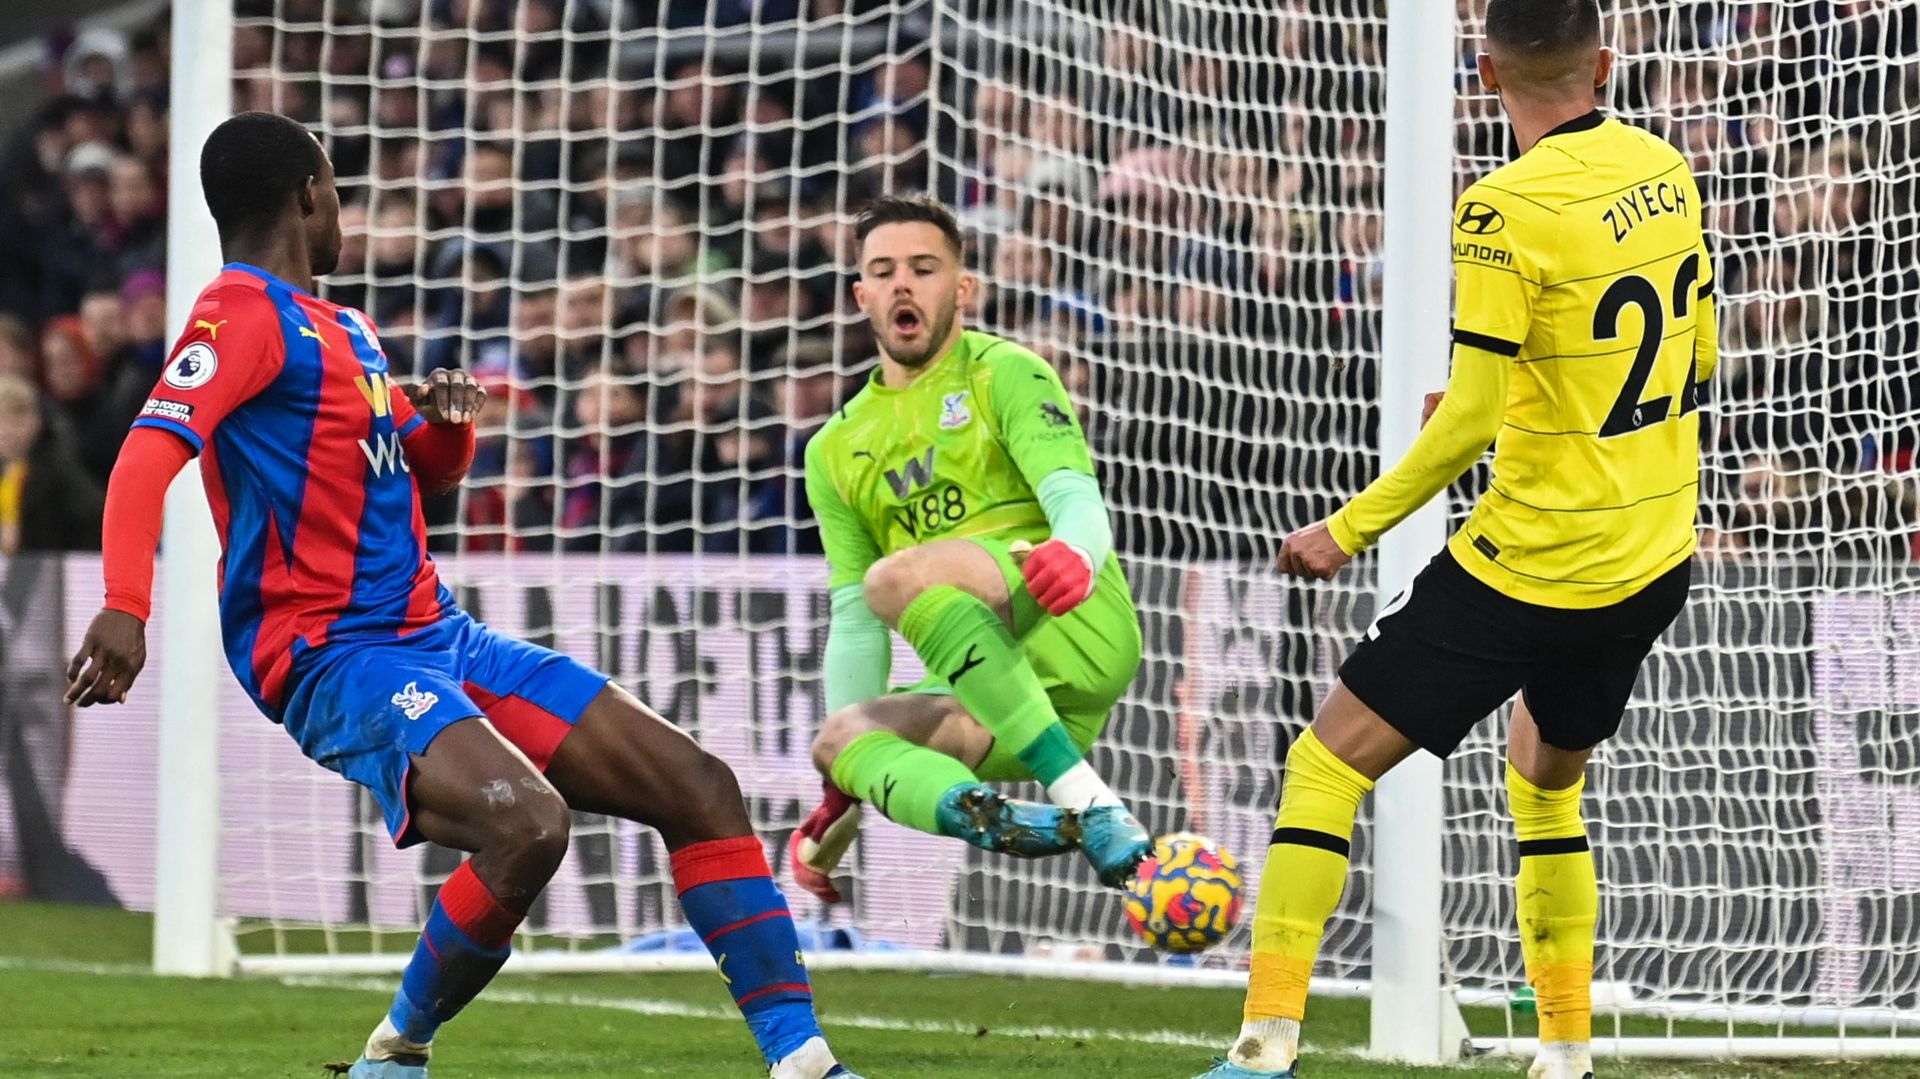 Chelsea et Romelu Lukaku se sont imposés in extremis à Crystal Palace (0-1) samedi après-midi lors de la 26e journée de Premier League.